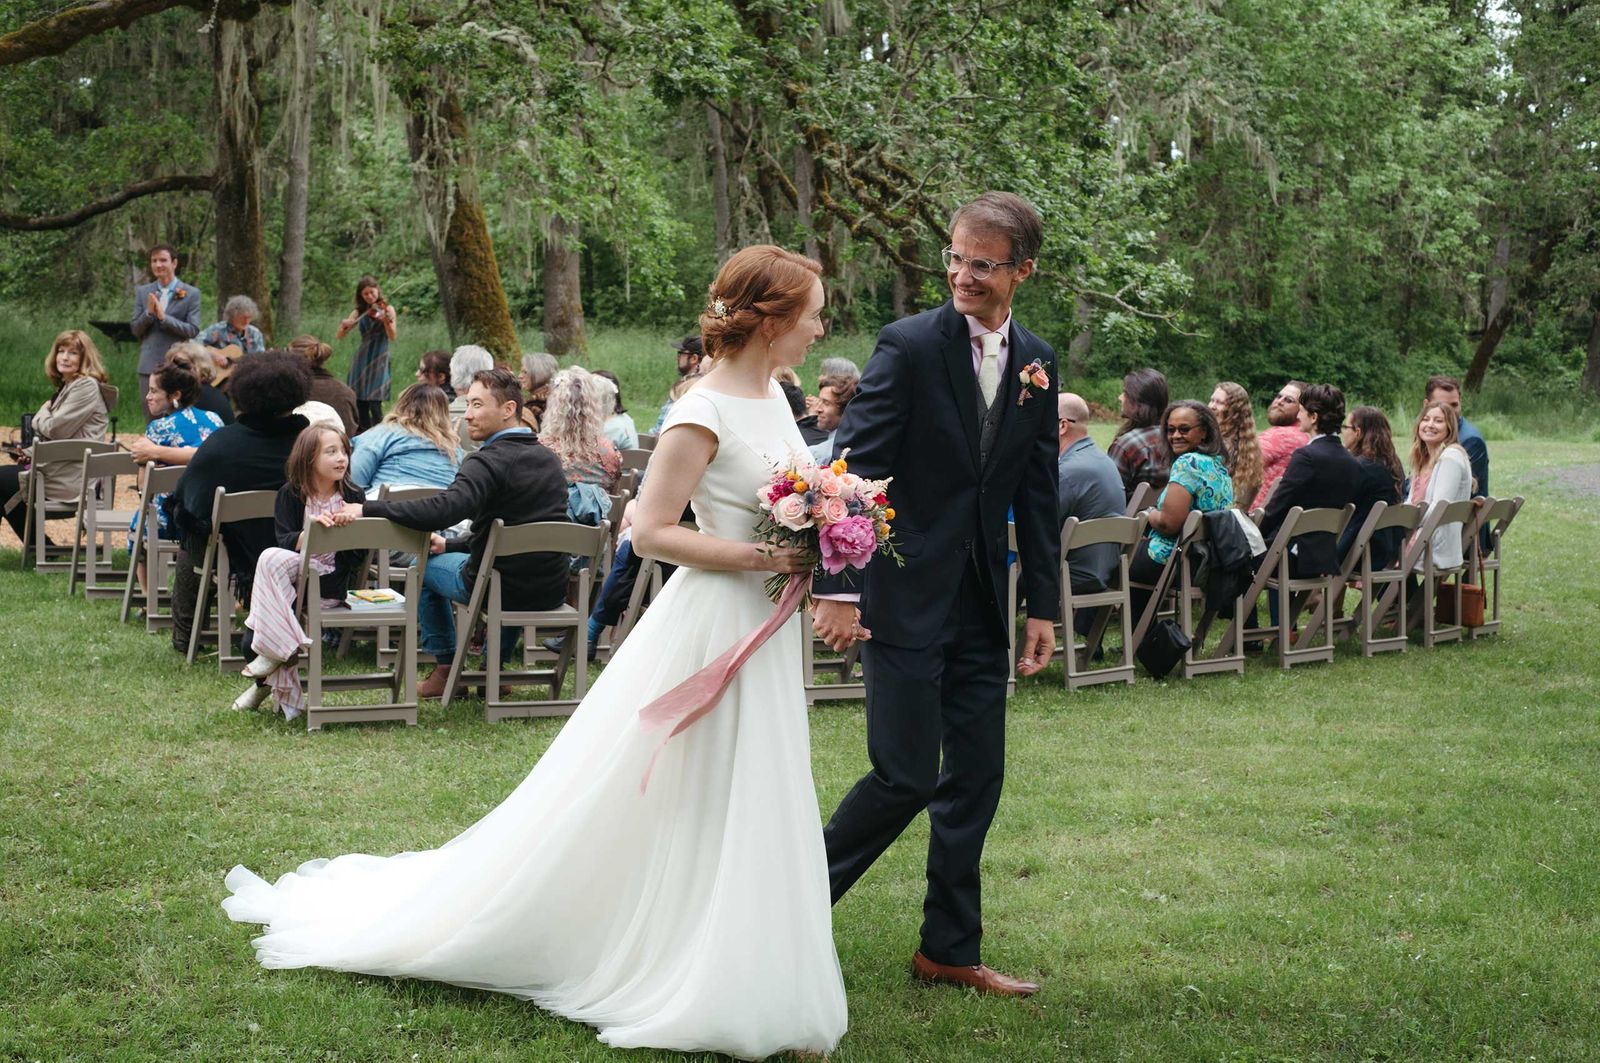 Spring wedding in Eugene oregon